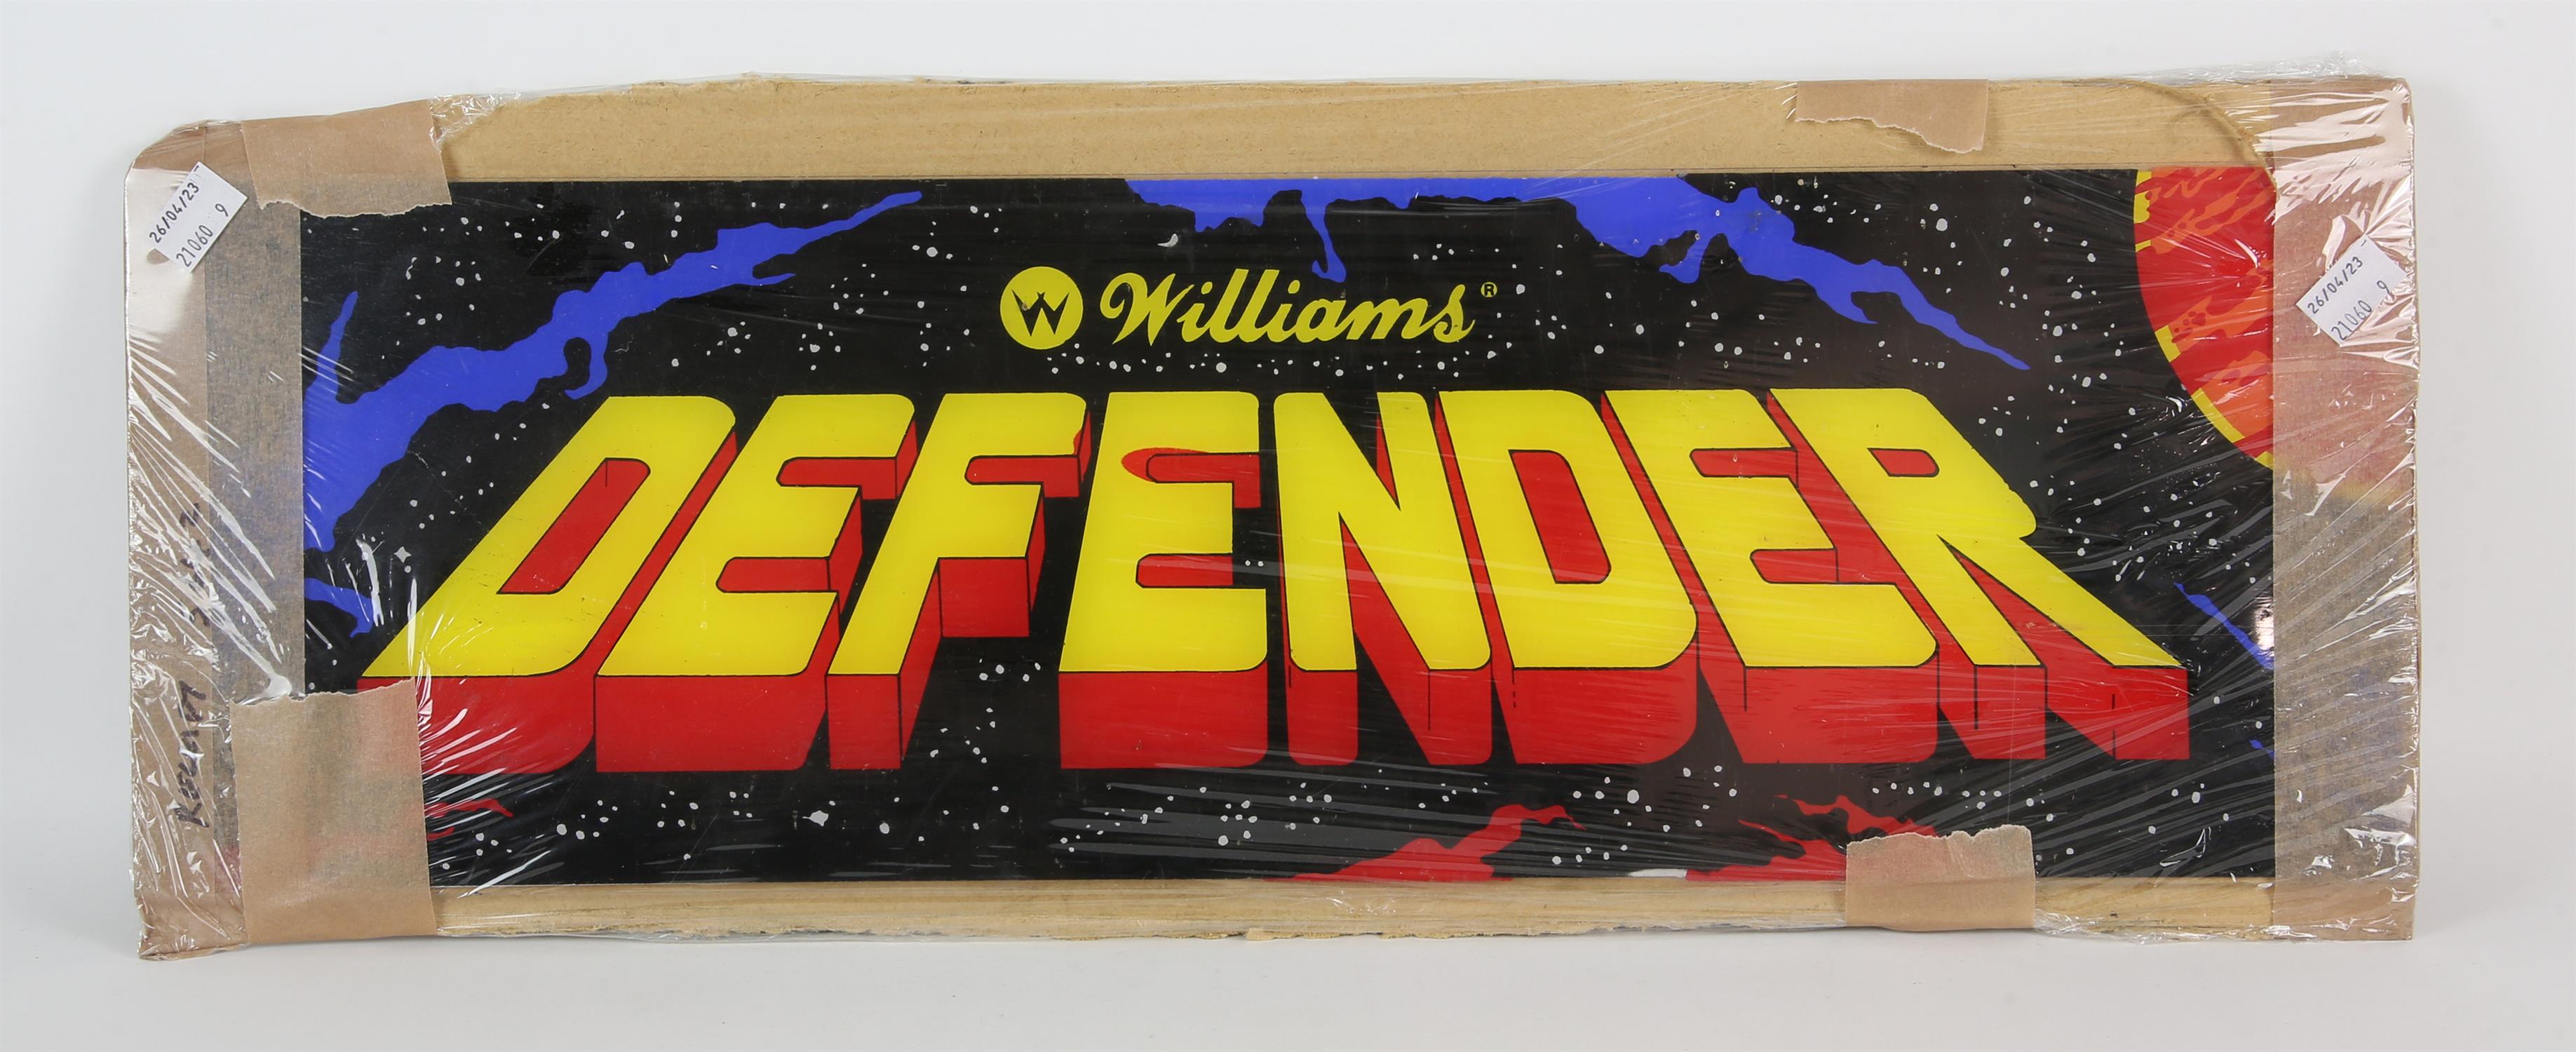 Williams Defender Arcade Cabinet Top Flash From the 1980s Defender arcade cabinet,